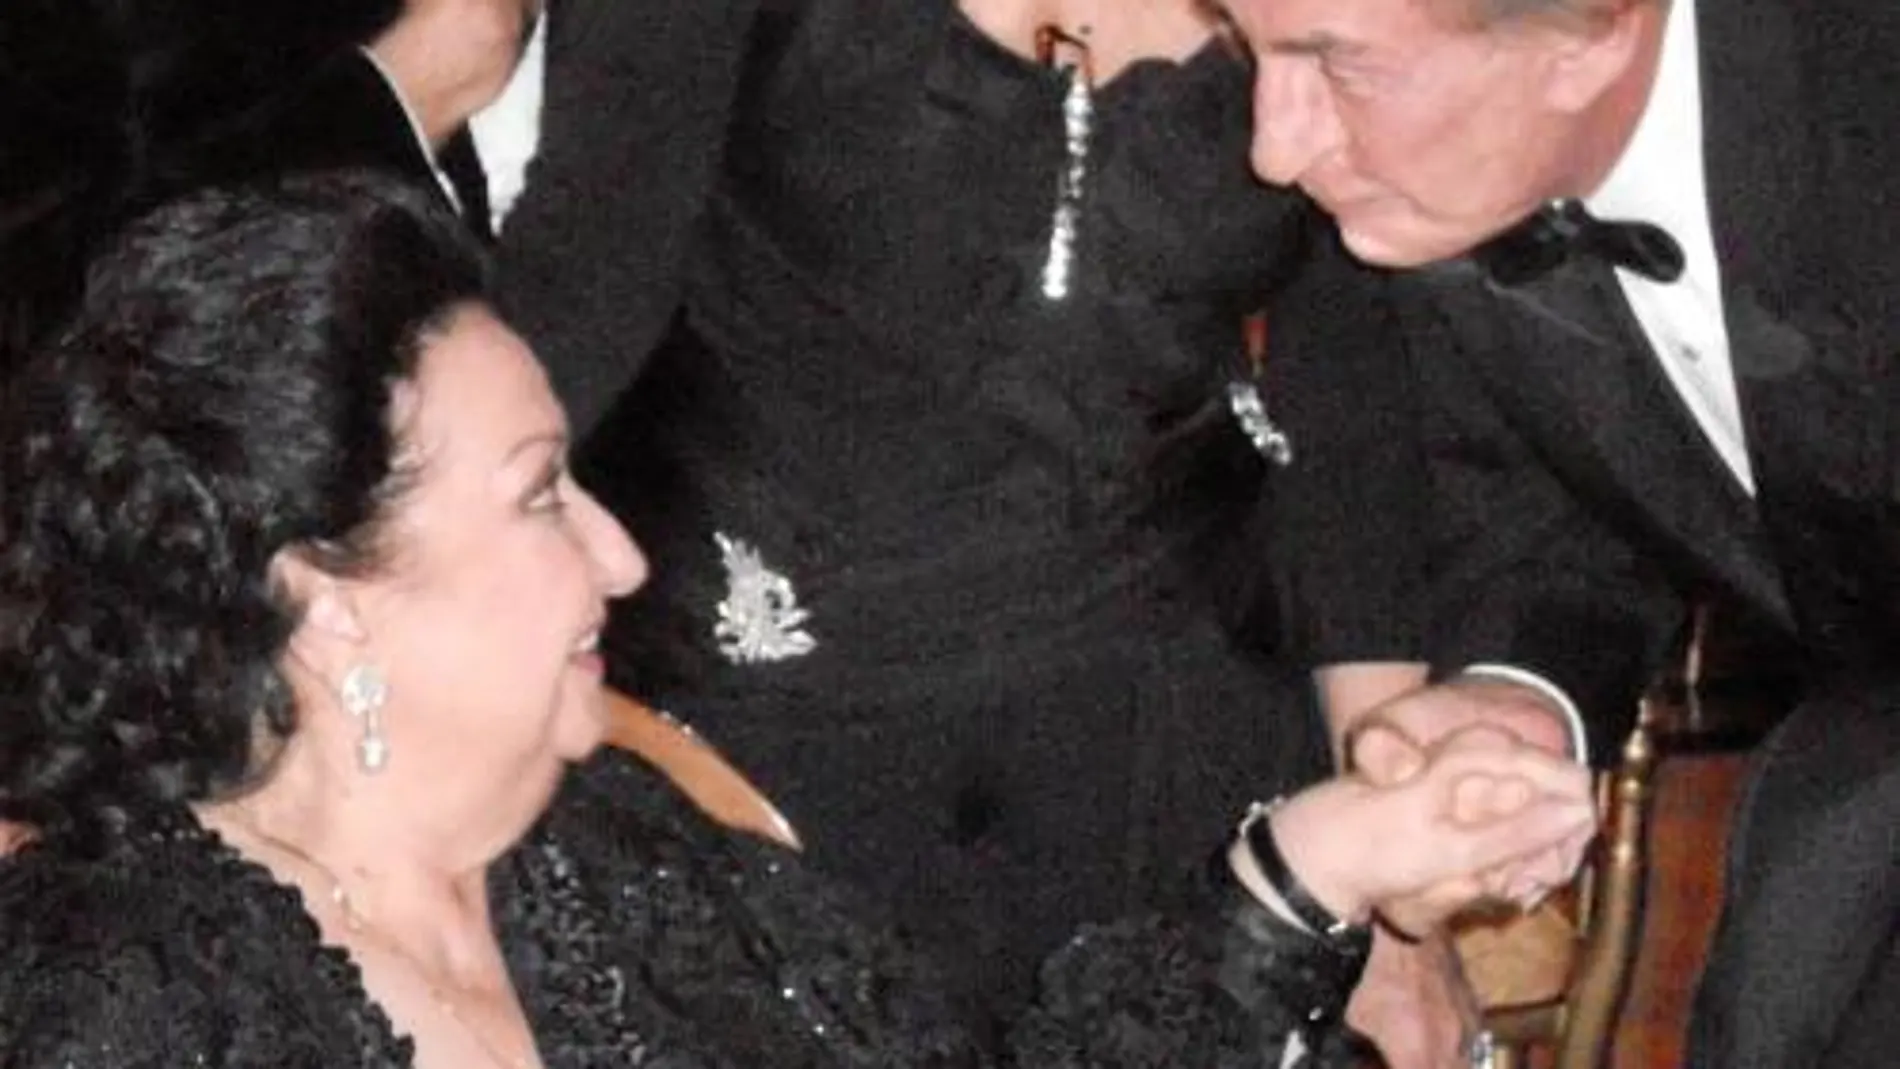 Paul Sarkozy fue el único que besó la mano de la soprano